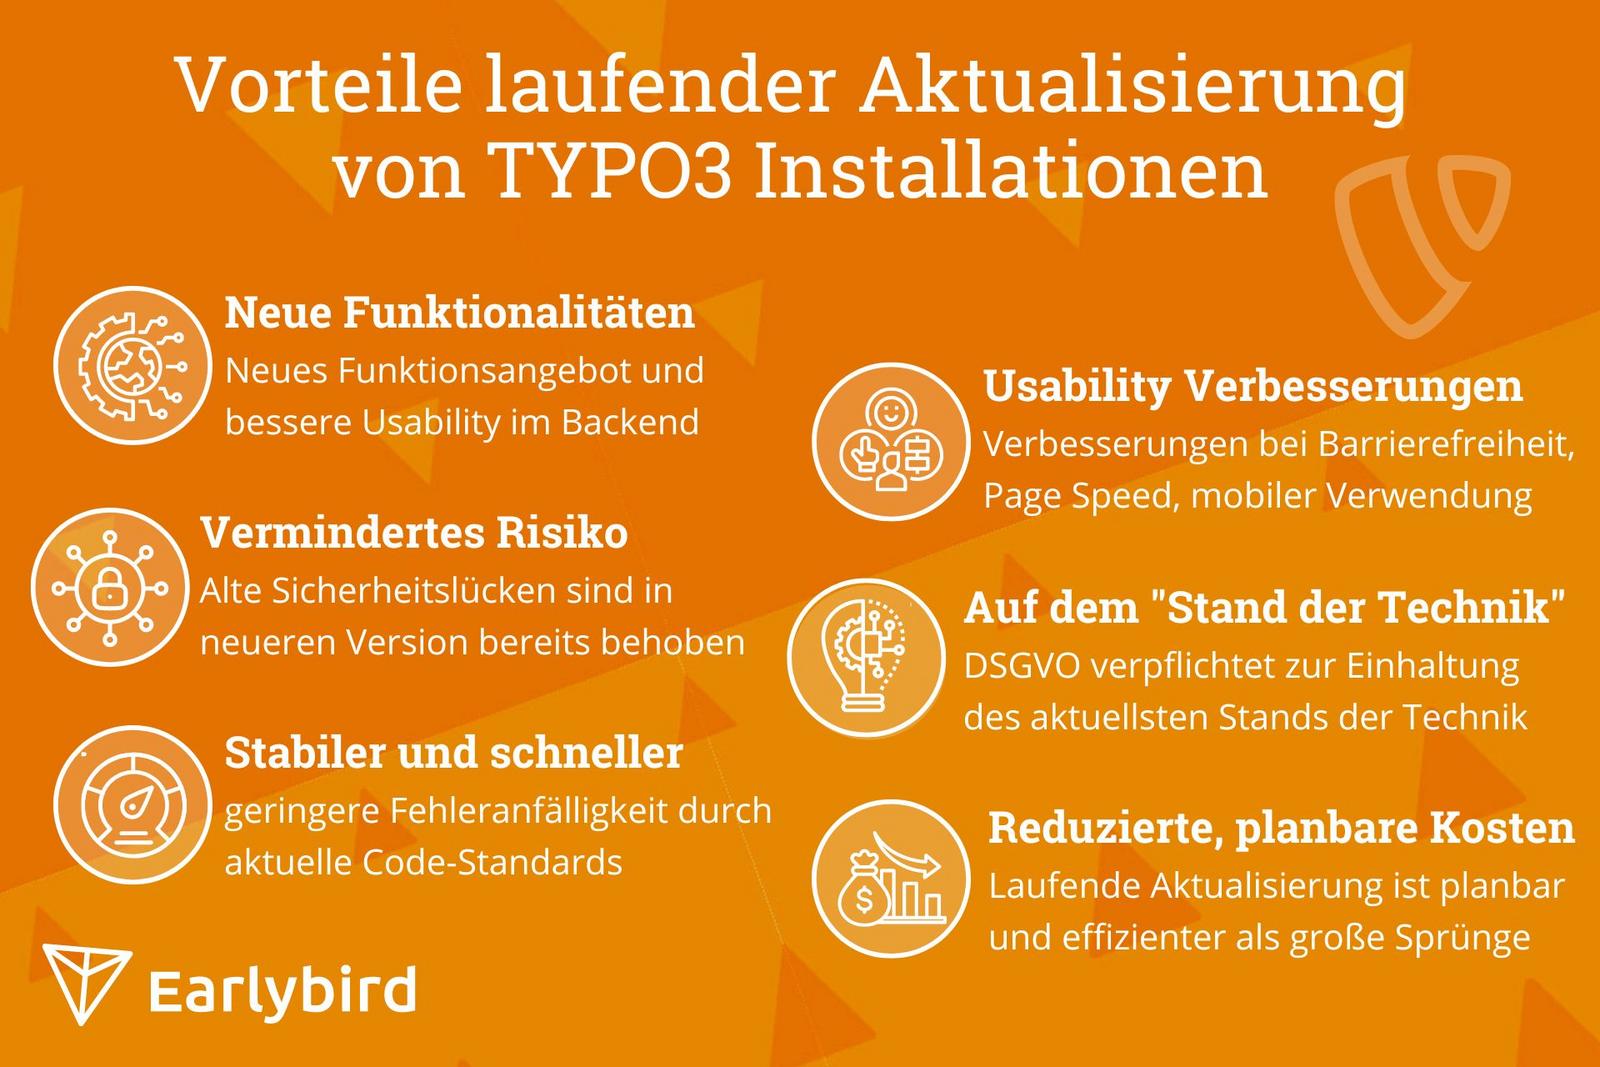 Grafische Auflistung der Vorteile laufender Aktualisierung von TYPO3 Installationen: Verbesserung von Sicherheit, Ladezeit, Usability, Kosten